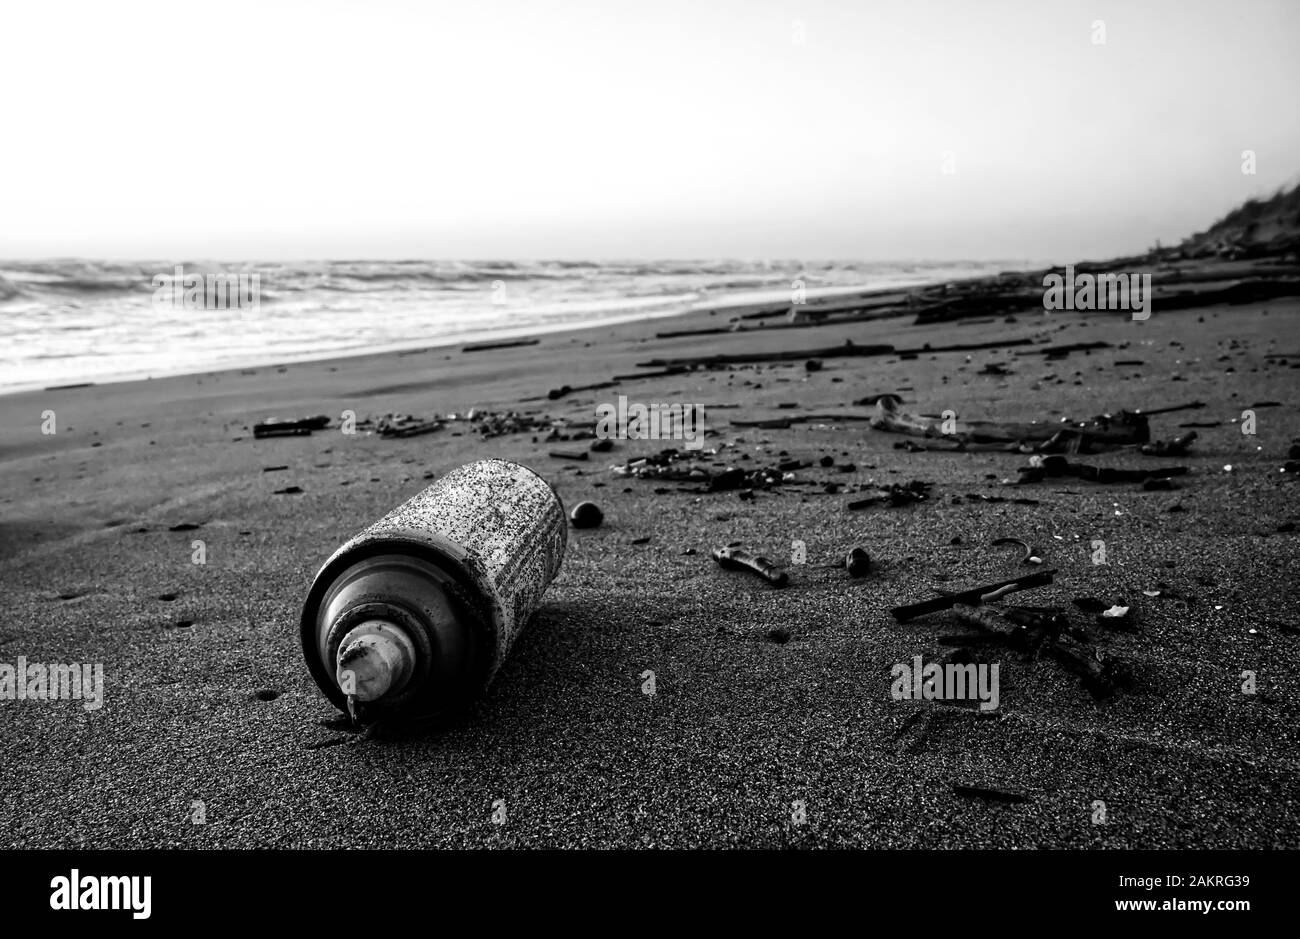 Un vaporisateur rouillé sur une plage montre l'impact sur la nature de la pollution humaine Banque D'Images